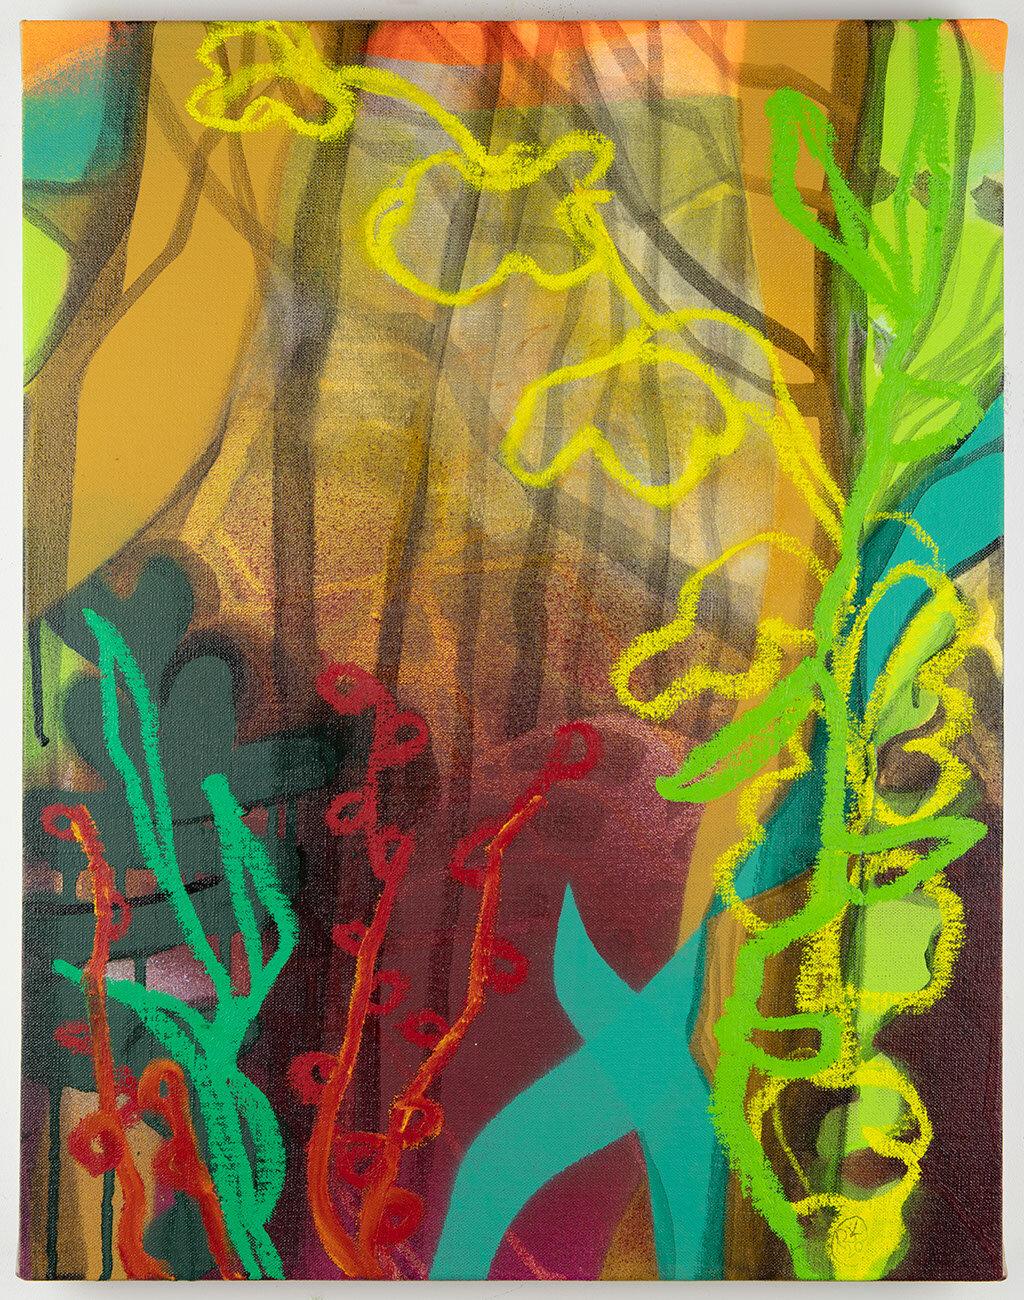 Rachelle Krieger Abstract Painting – Night Blooms, mehrfarbiges abstraktes Landschaftsgemälde, grün und orange